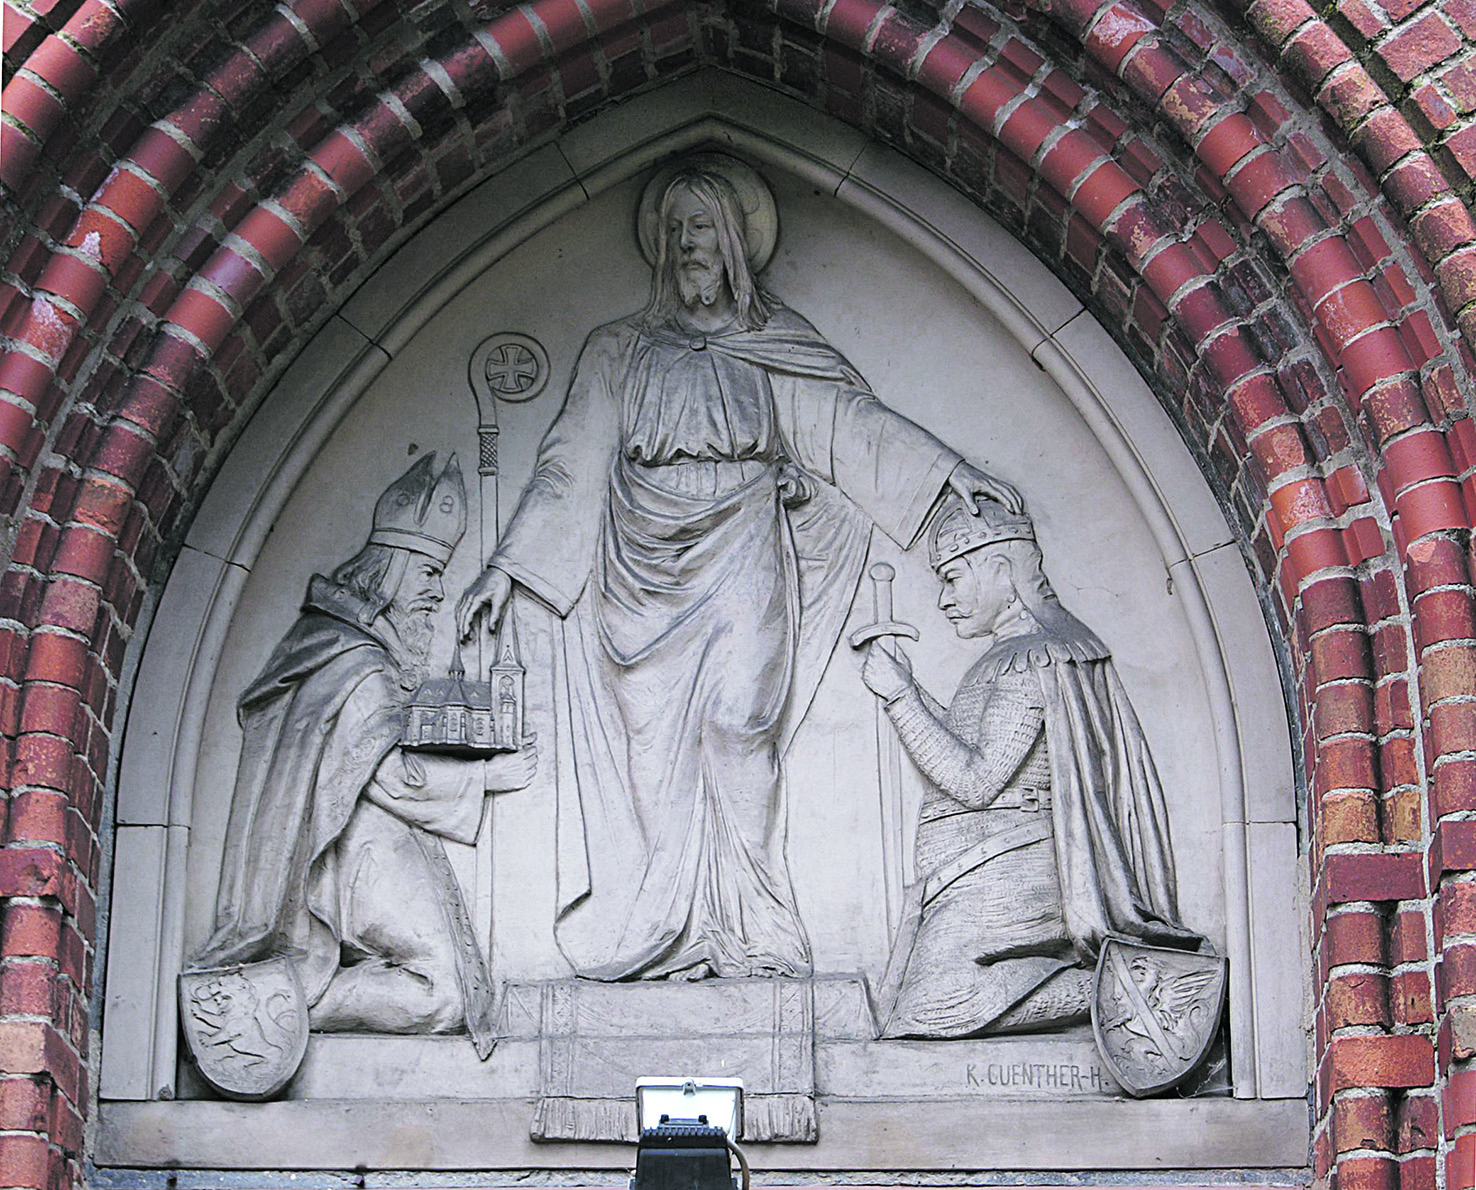 Relief über dem Portal der Wartislaw-Gedächtniskirche in Stolpe an der Peene: Jesus Christus legt Wartislaw I. die Hand auf das Haupt, Bischof Otto von Bamberg präsentiert das Modell der Kirche 